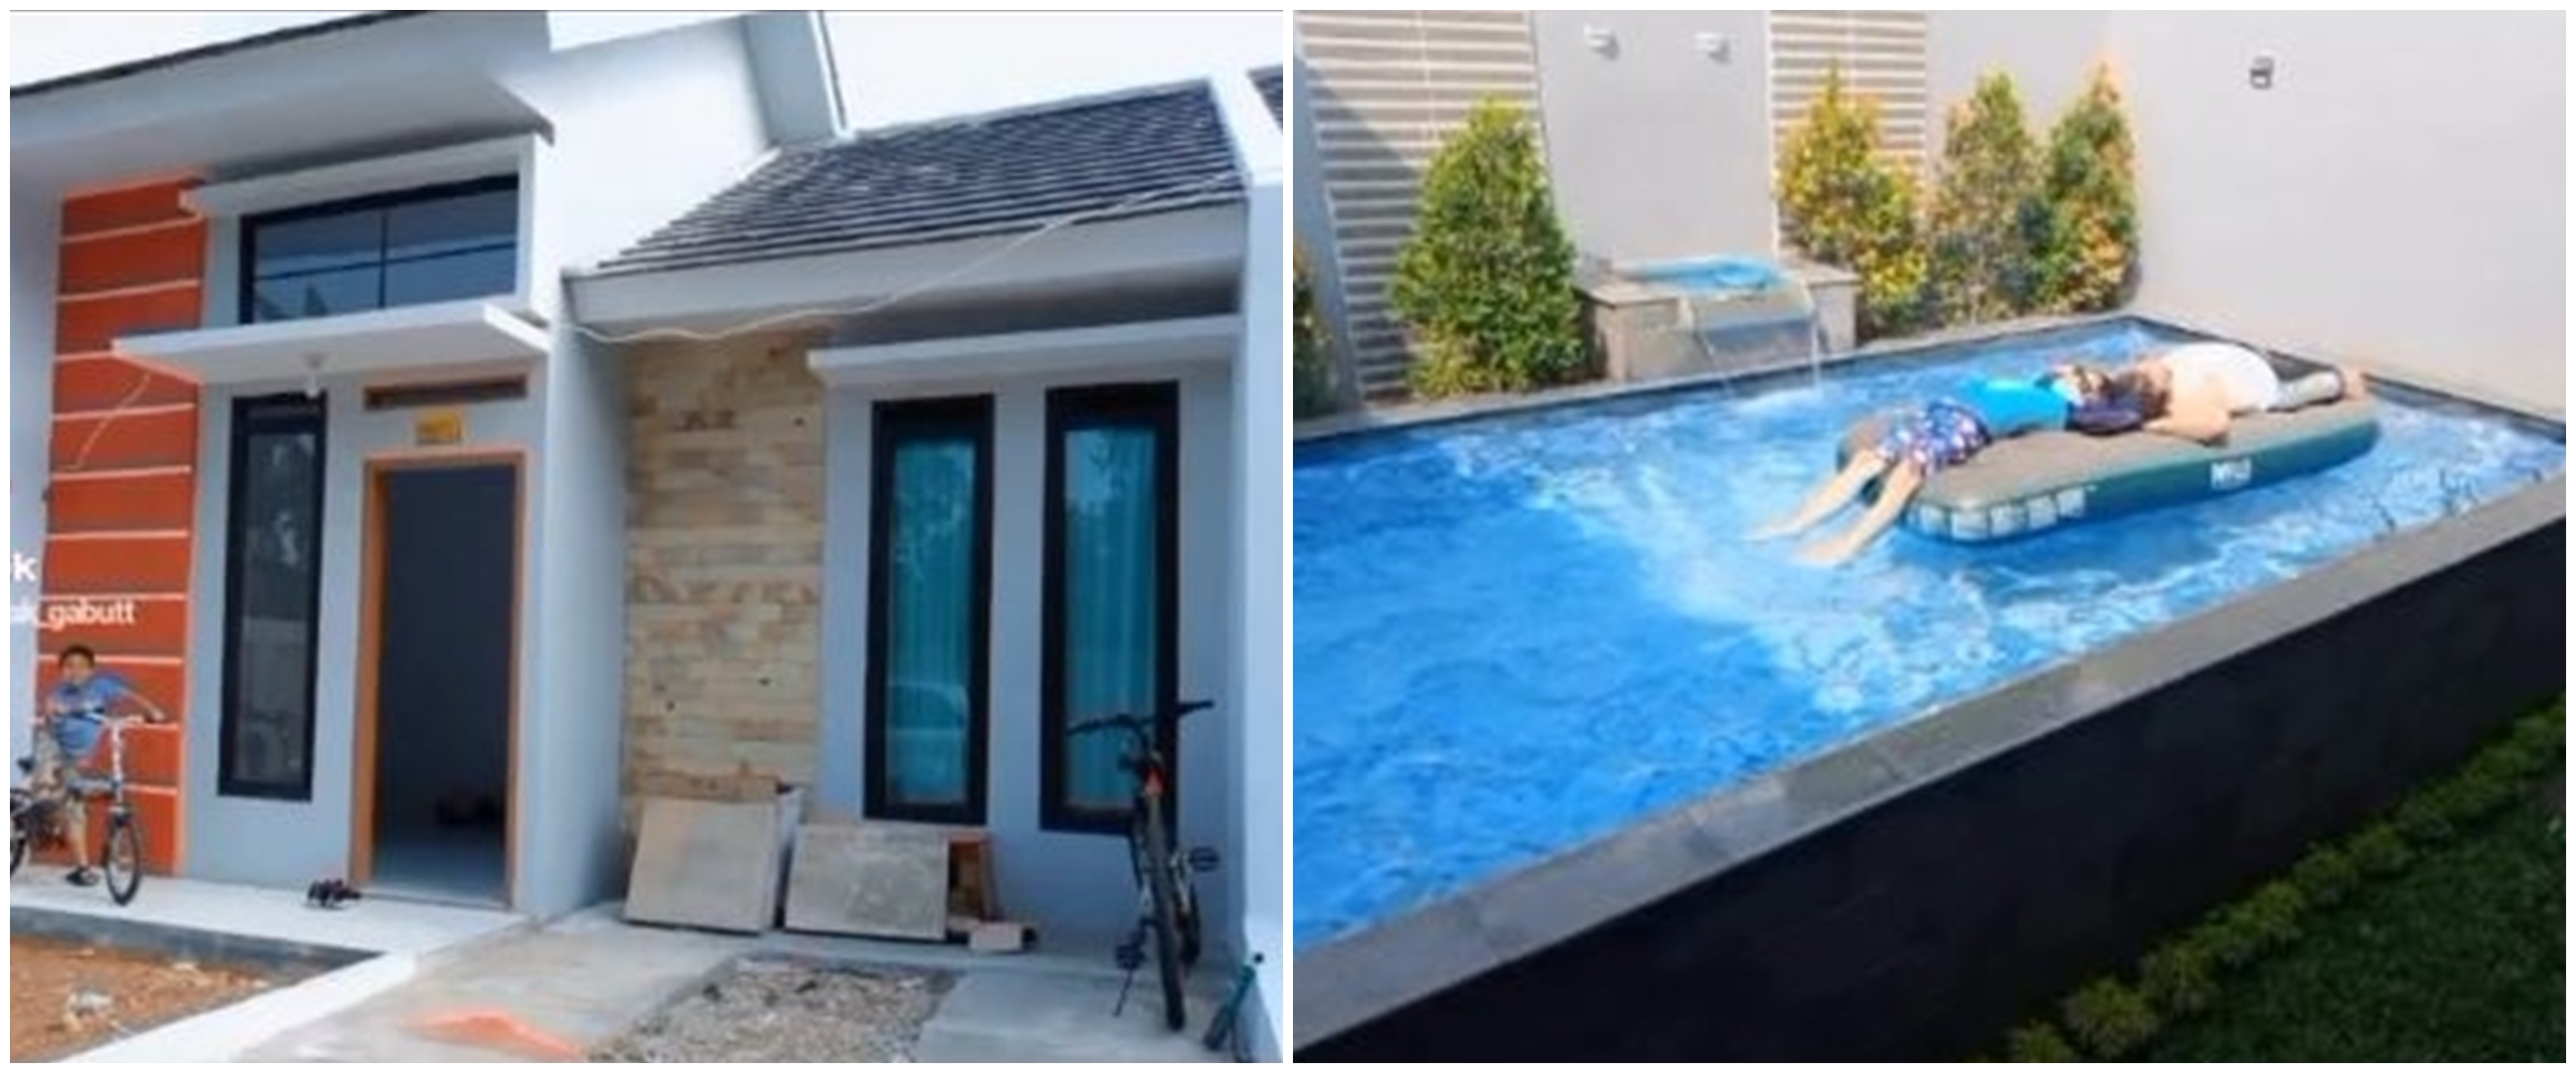 Viral potret rumah tipe 36 dilengkapi kolam renang, jadi spot favorit